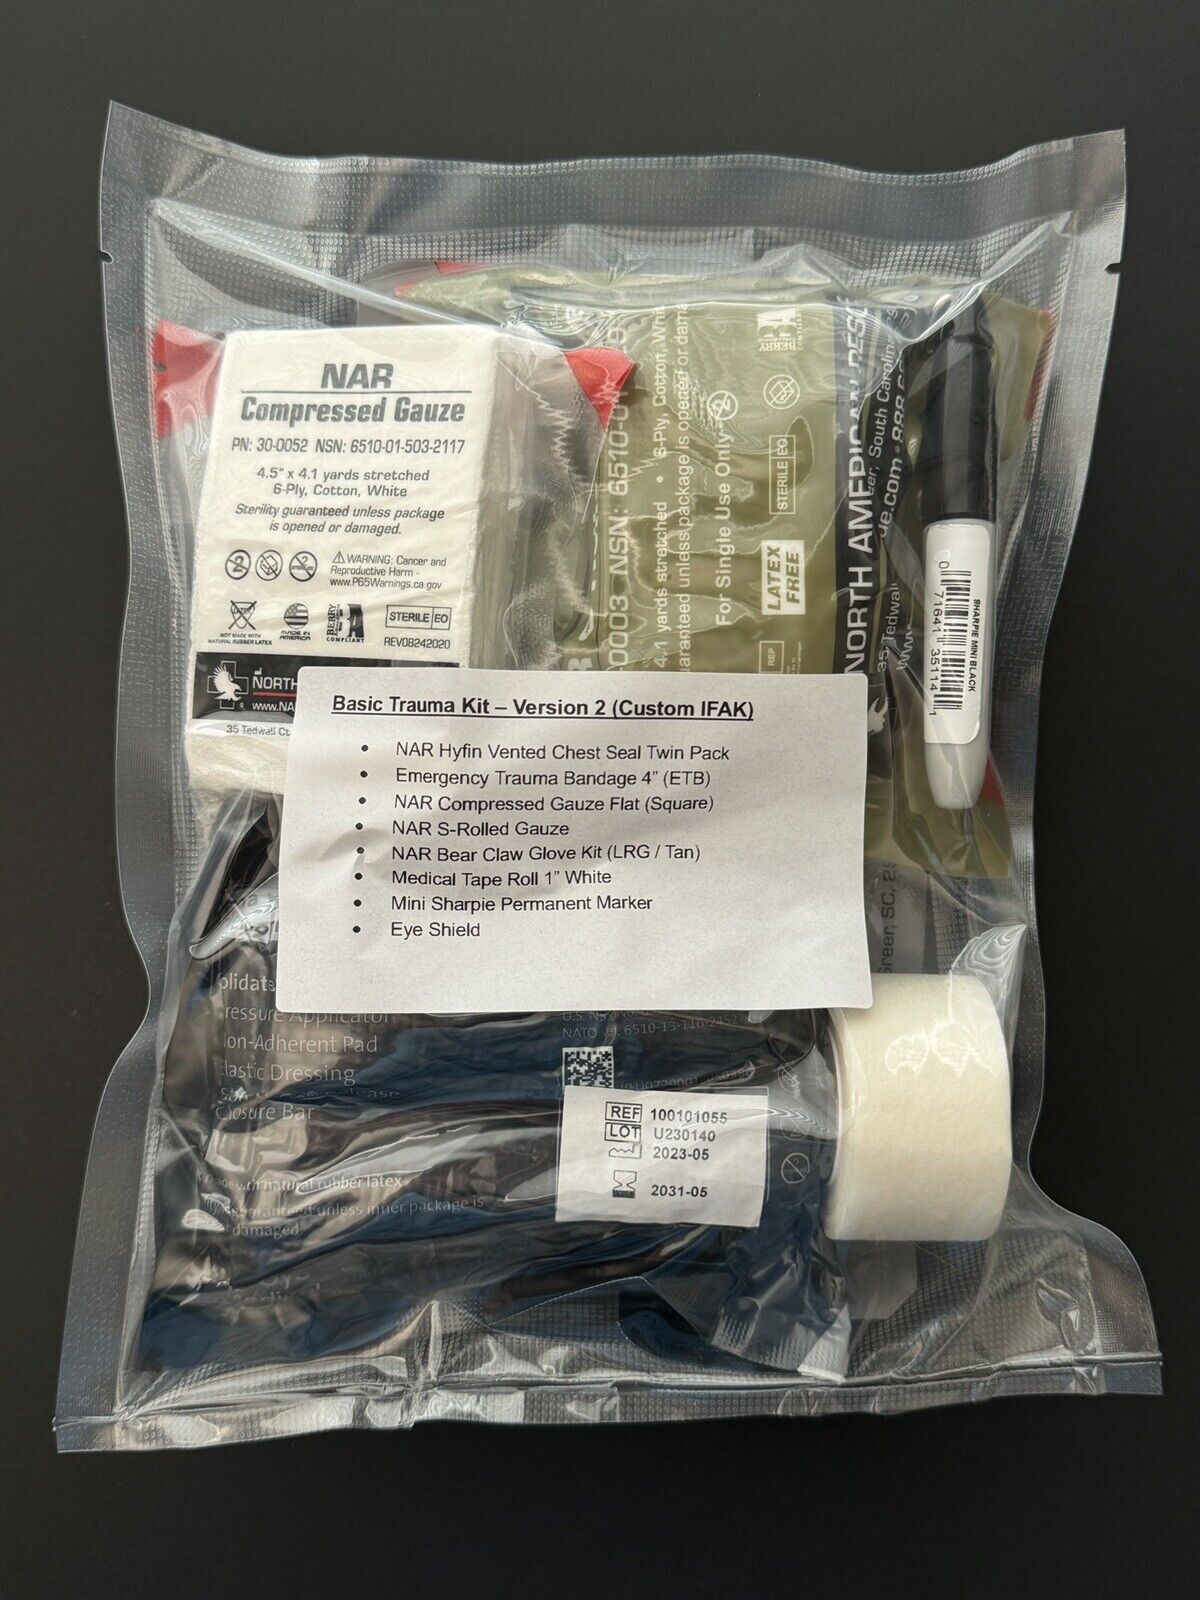 Basic Trauma Kit - Version 2 (Custom IFAK) First Aid Medical Kit